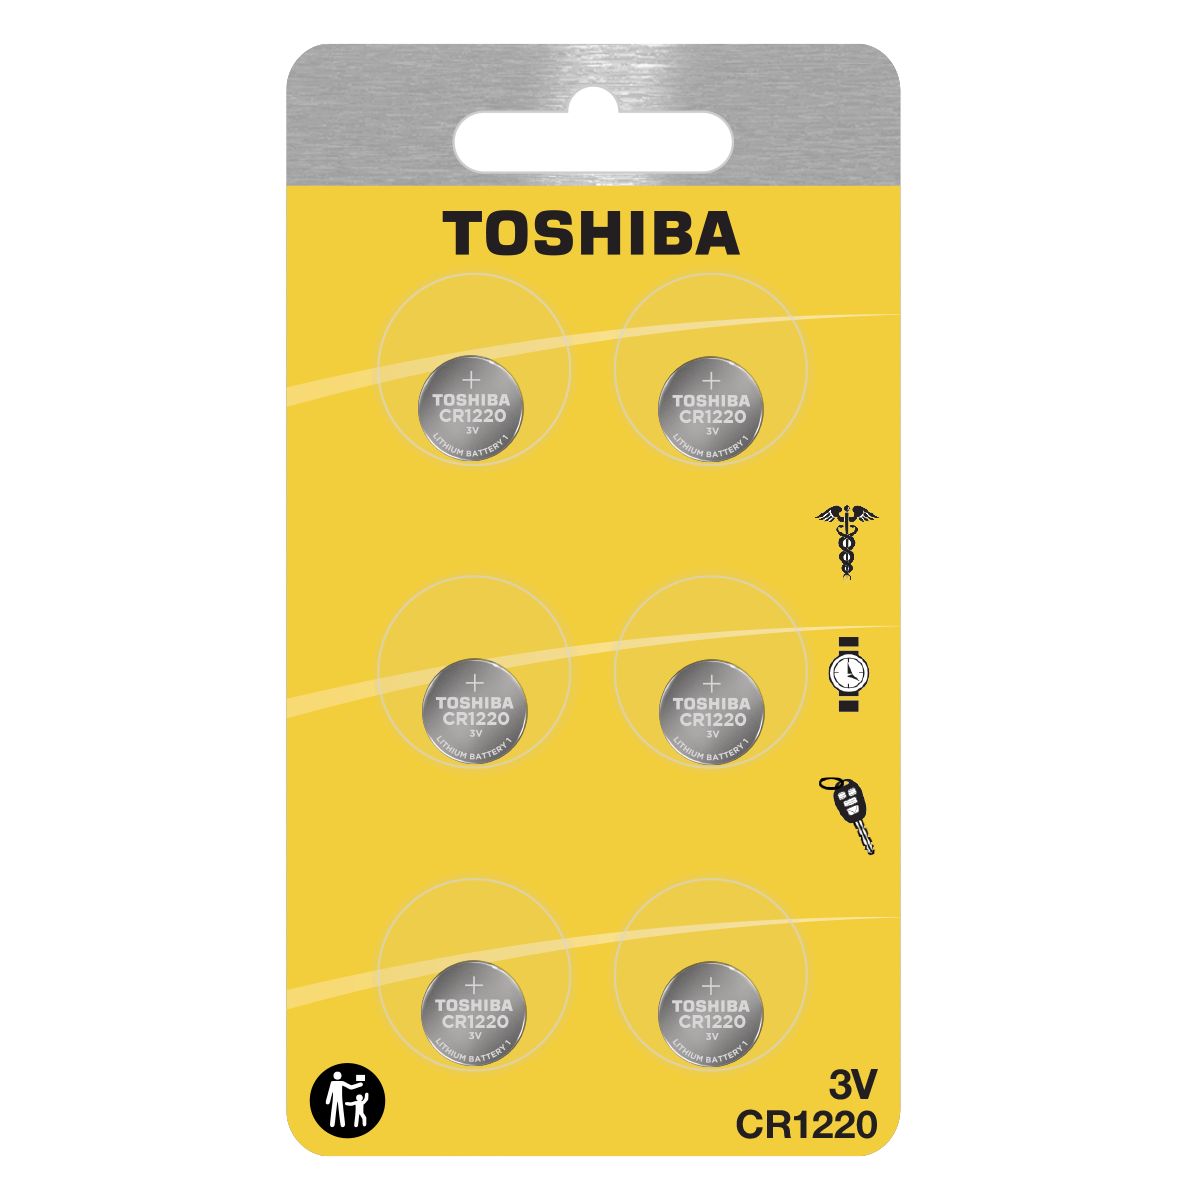 Toshiba CR1220 Pila de botón lítio 3V x1 unidad